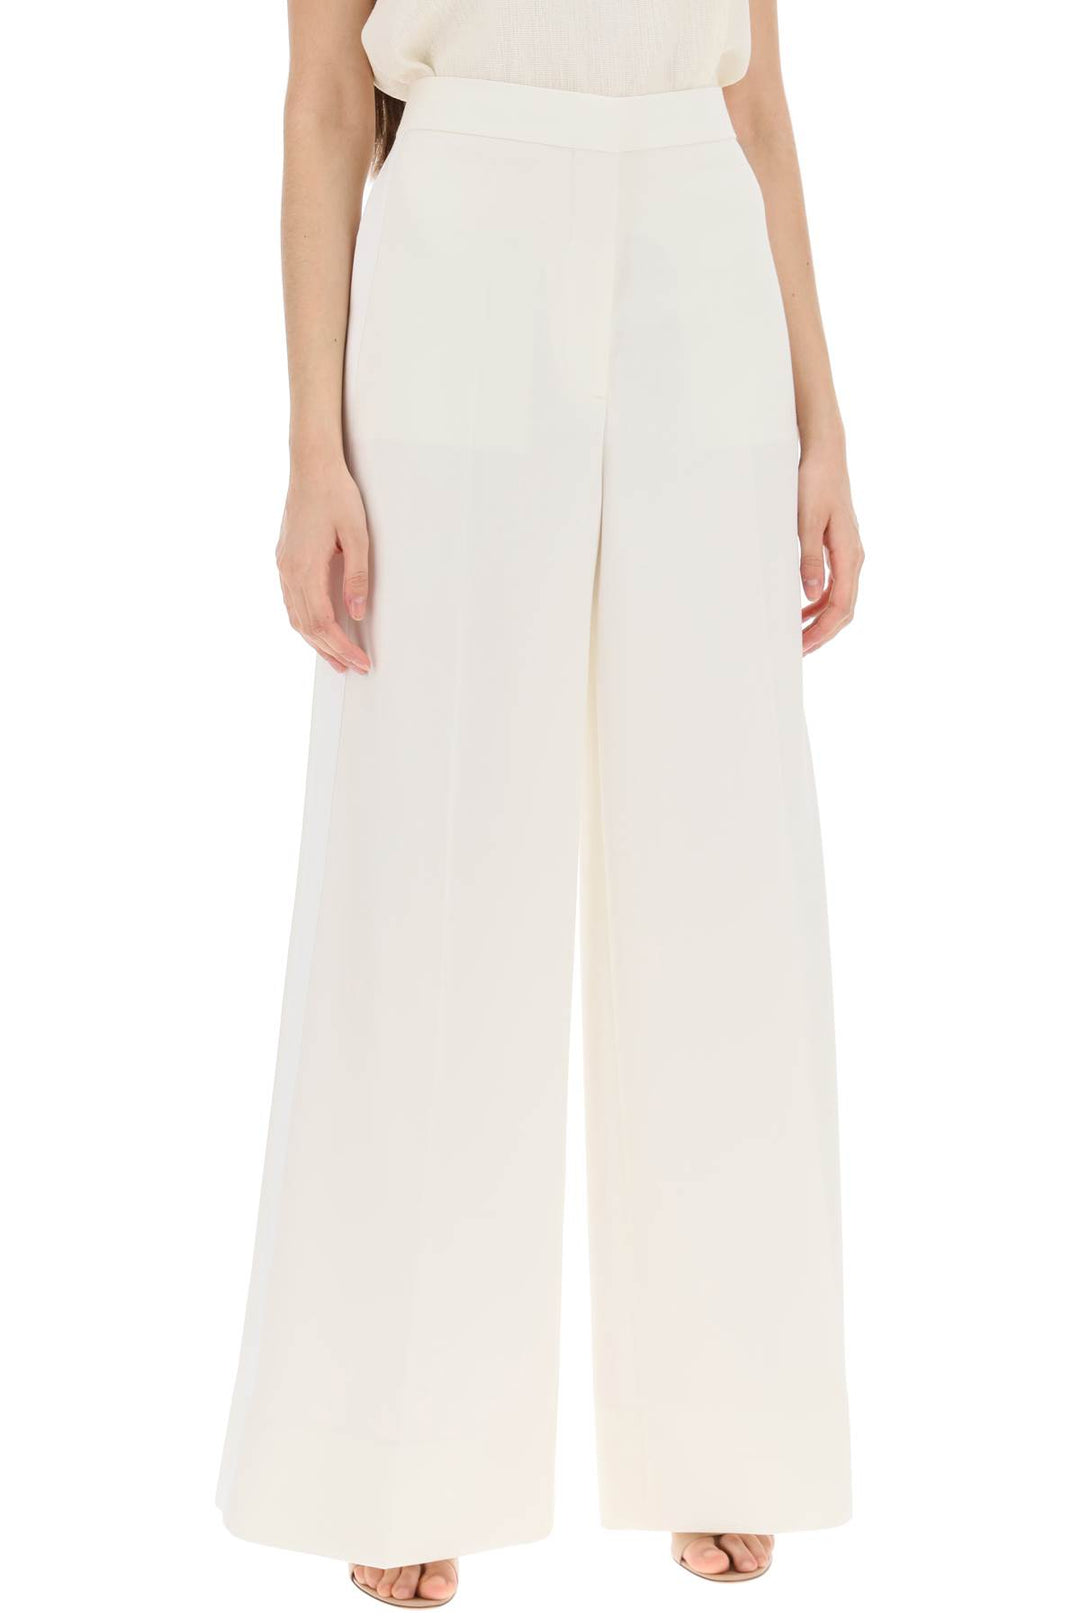 Stella Mc Cartney Tailored Wool Trousers   Bianco